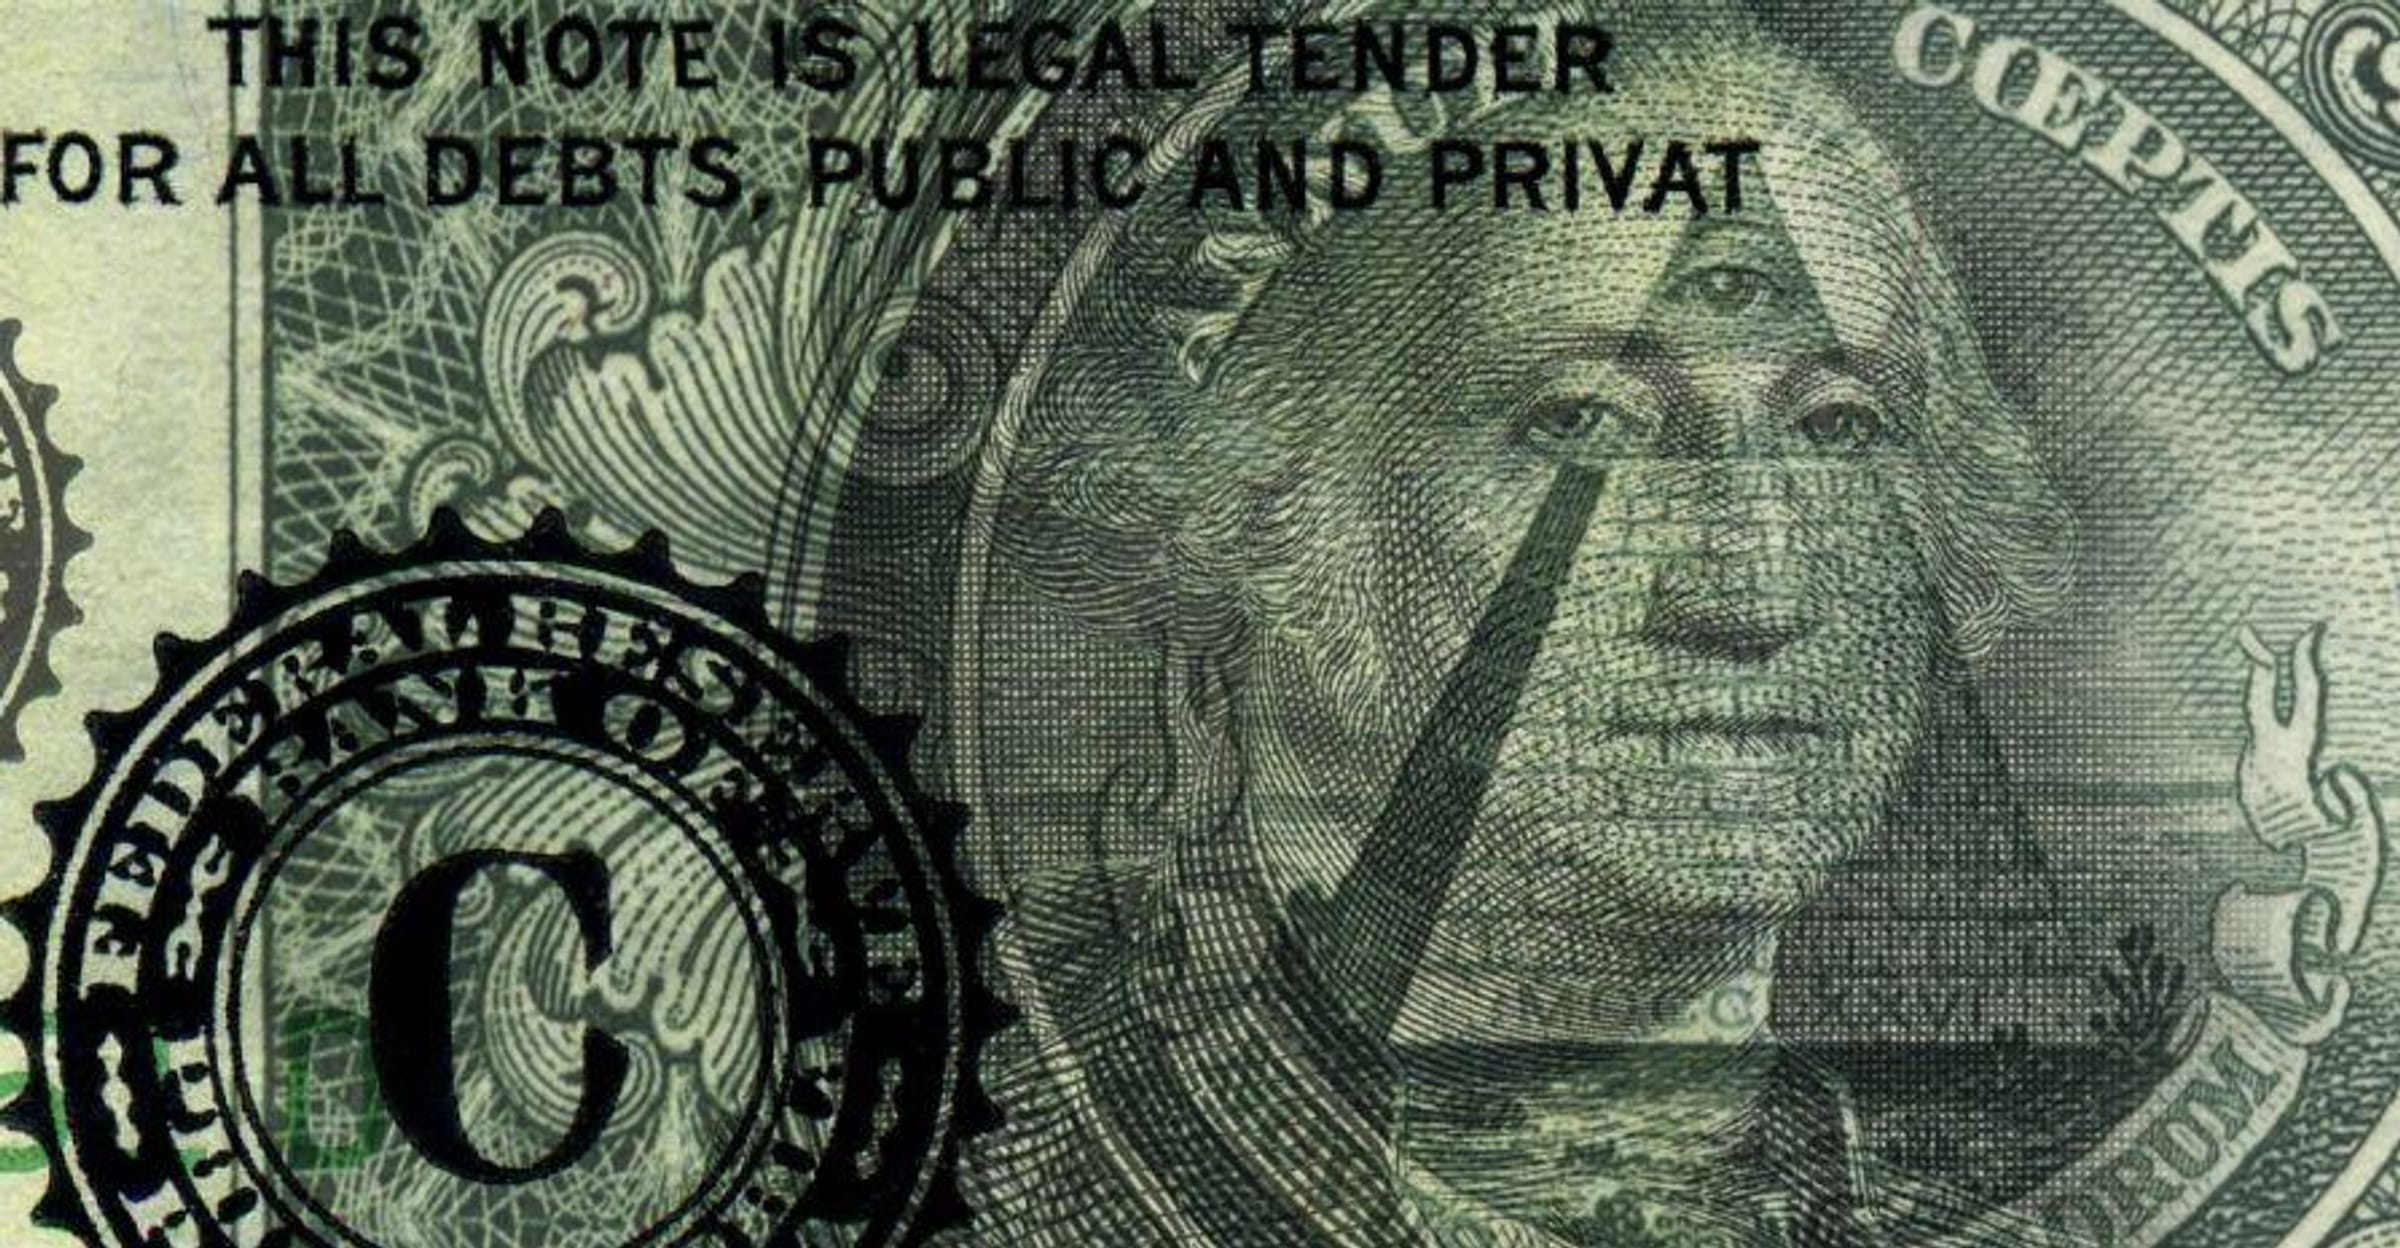 illuminati logo on dollar bill